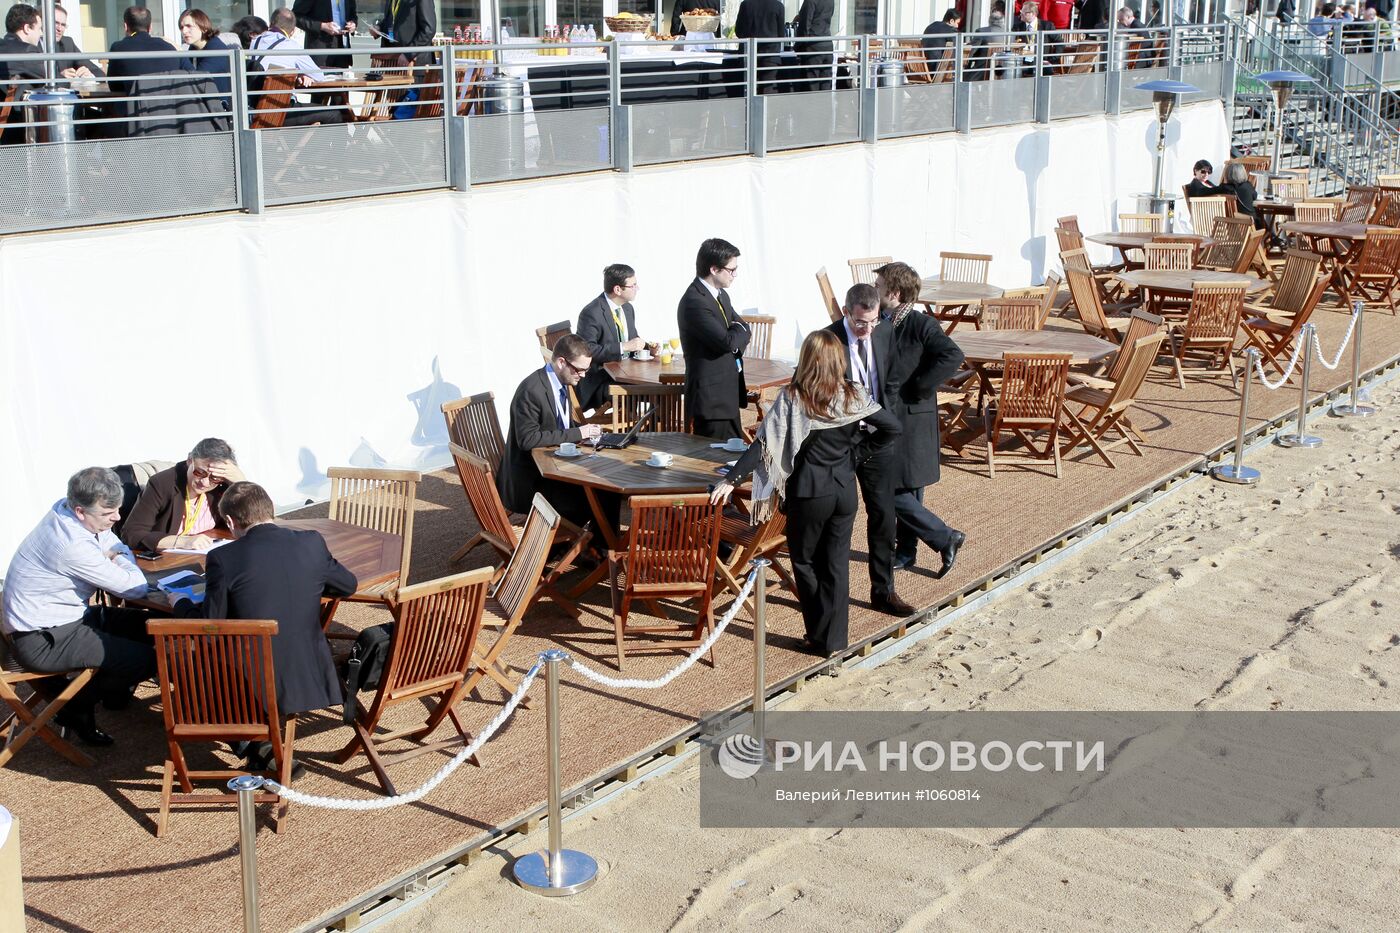 Международная выставка недвижимости "МИПИМ-2012" в Каннах